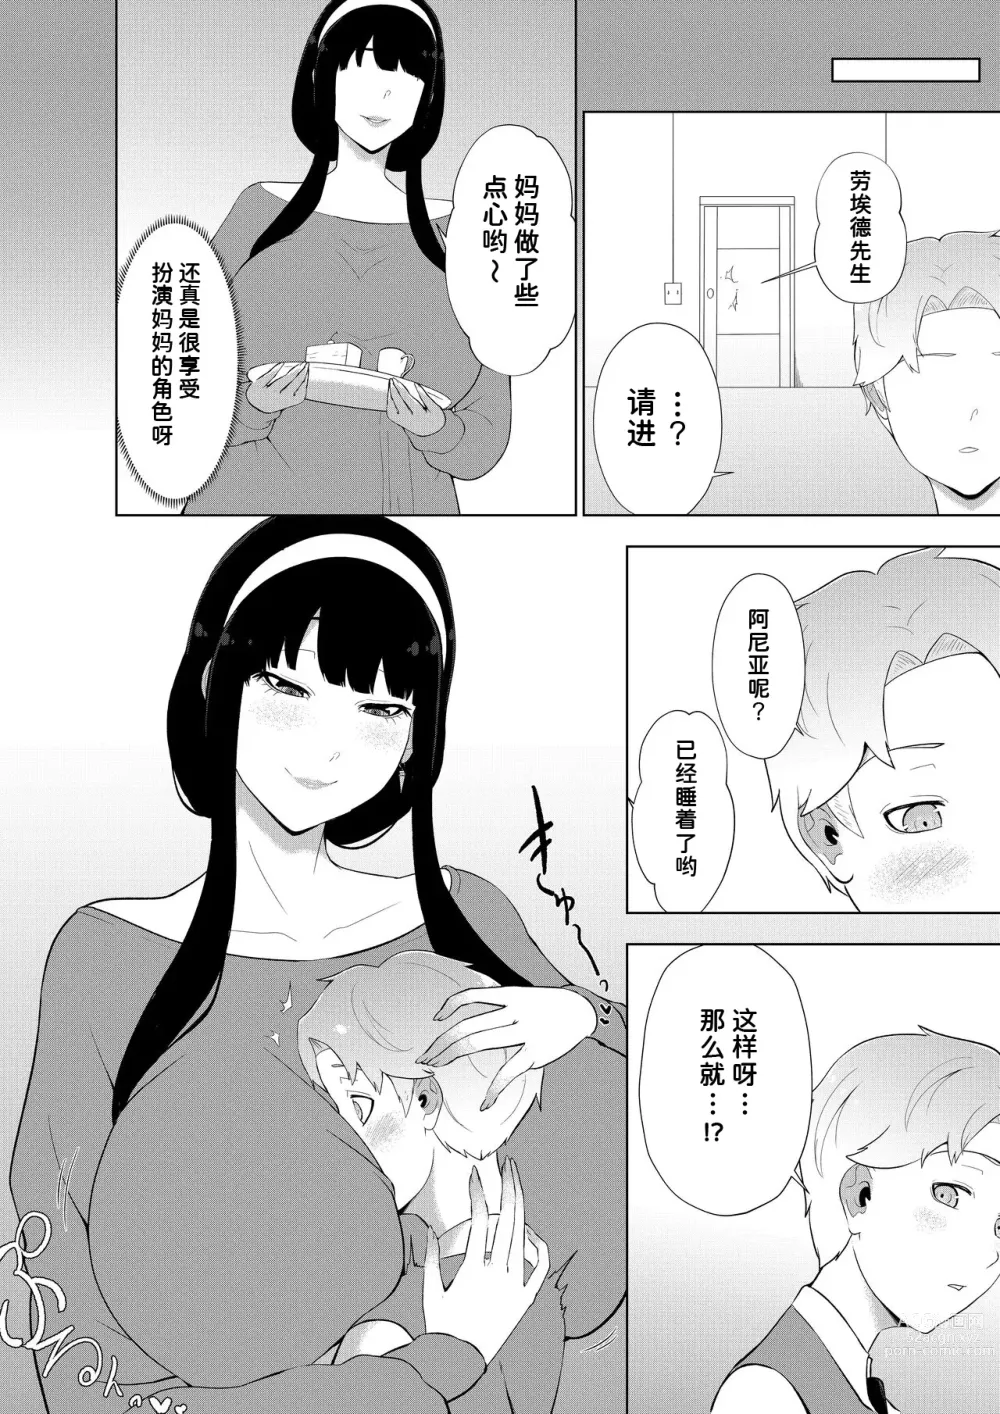 Page 6 of doujinshi One Shota Family